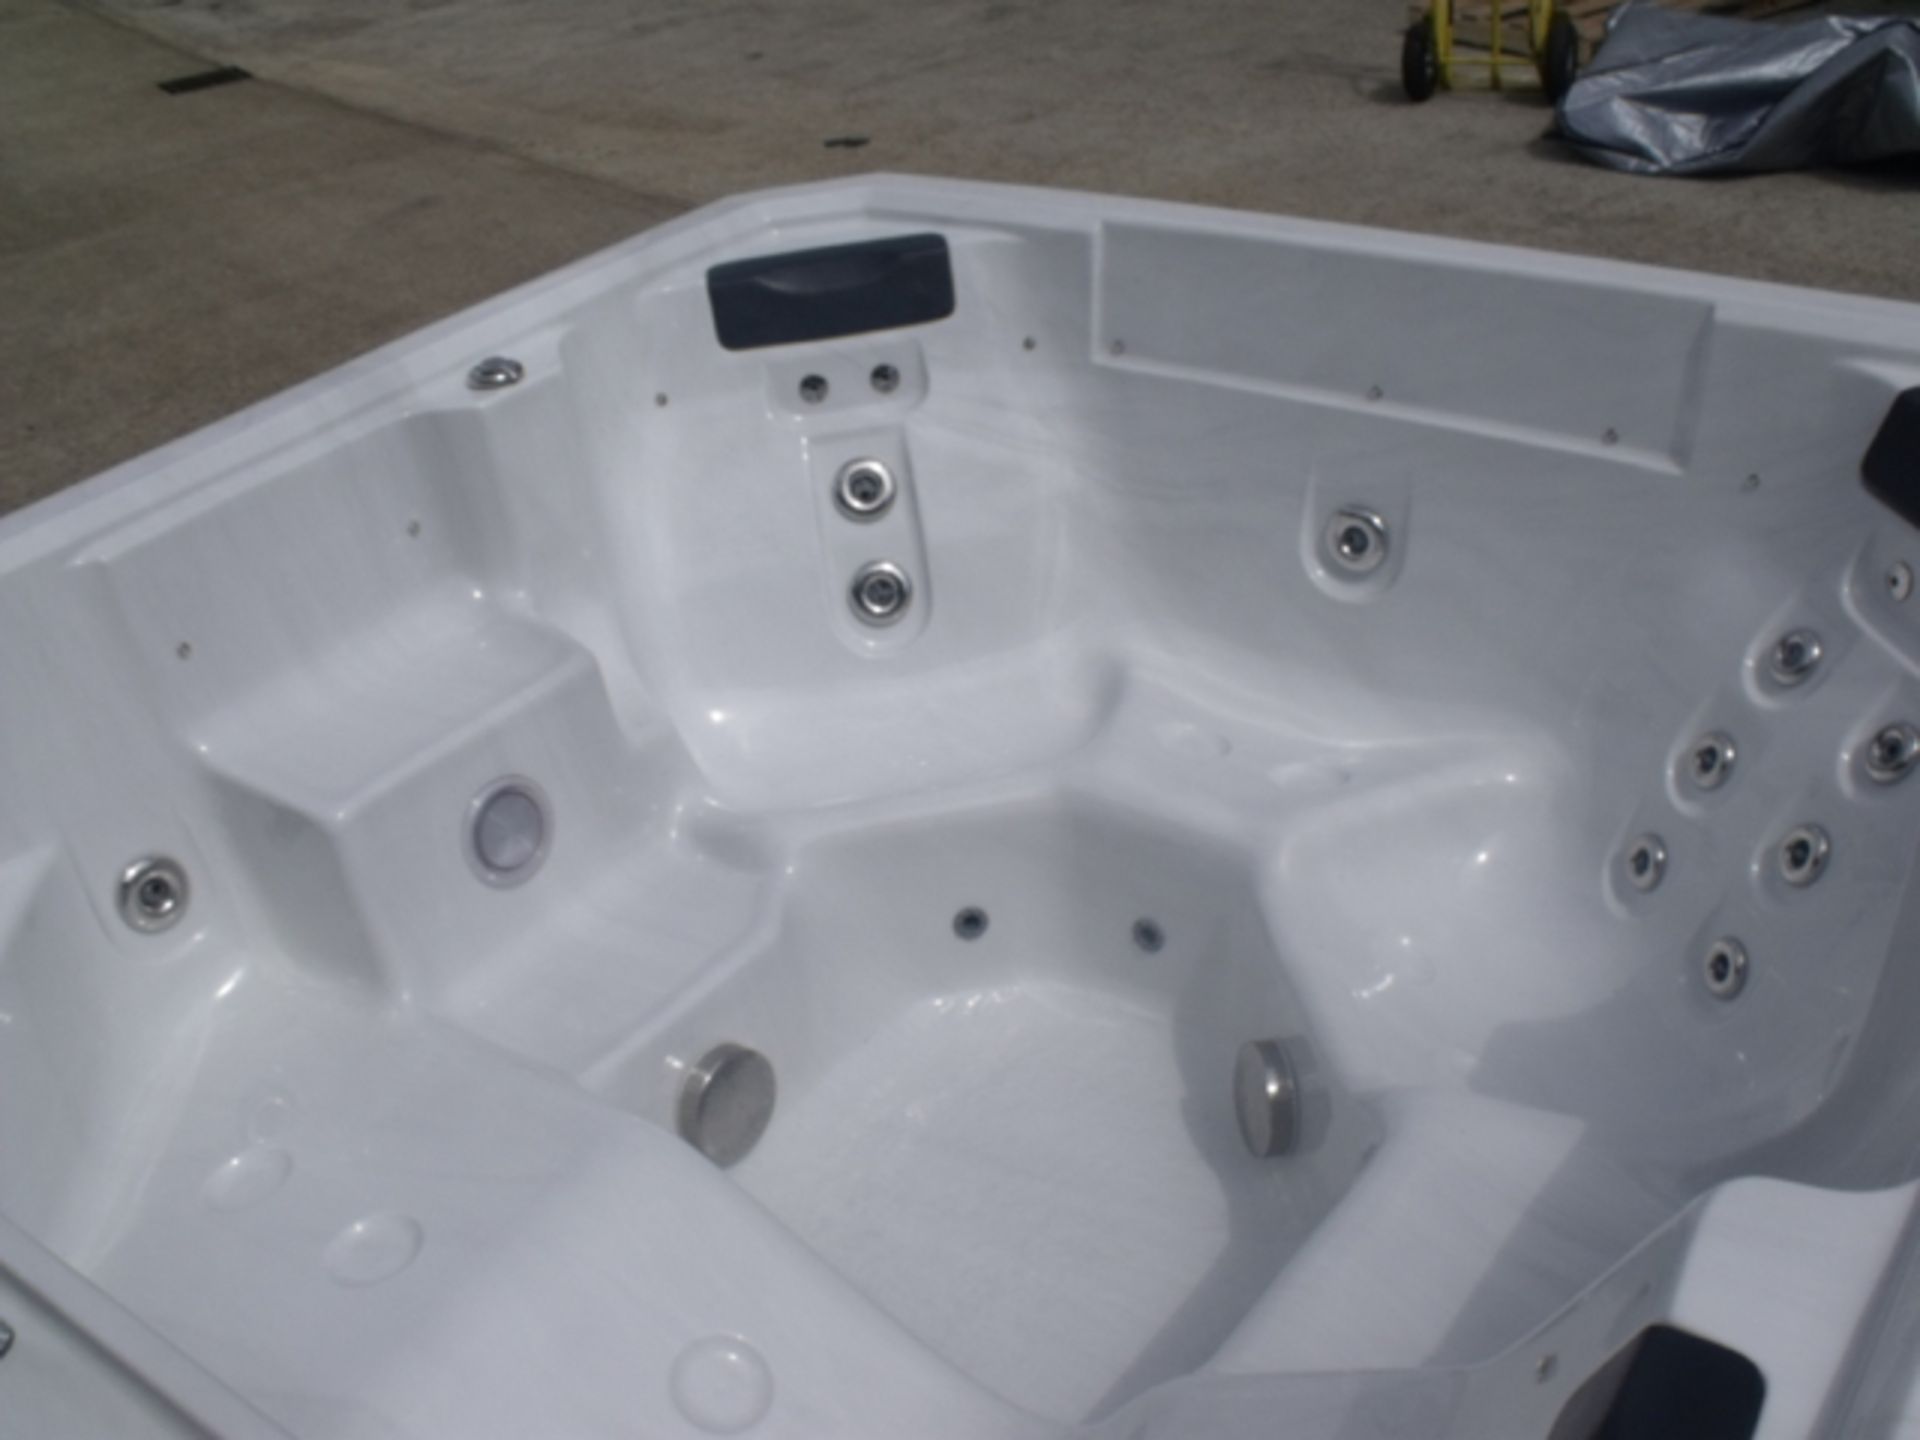 Brand New 2015 Executive Range Hot Tub. - Image 5 of 8